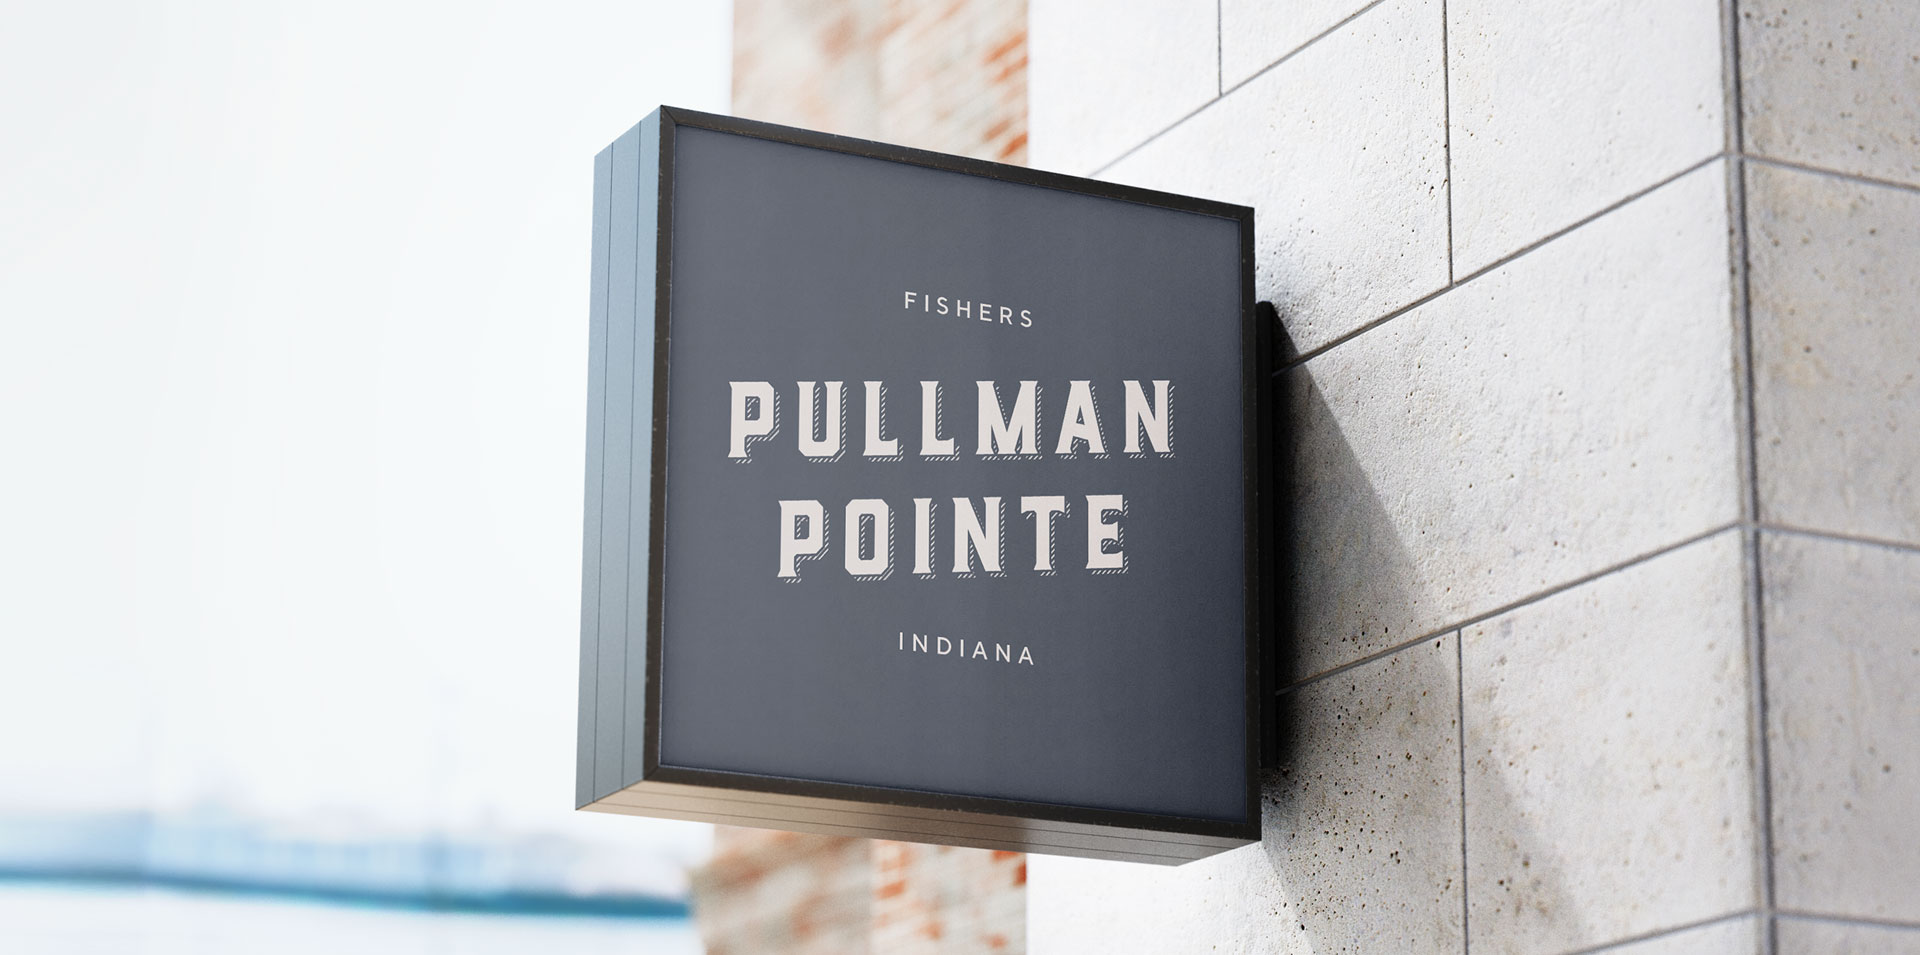 Pullman Pointe